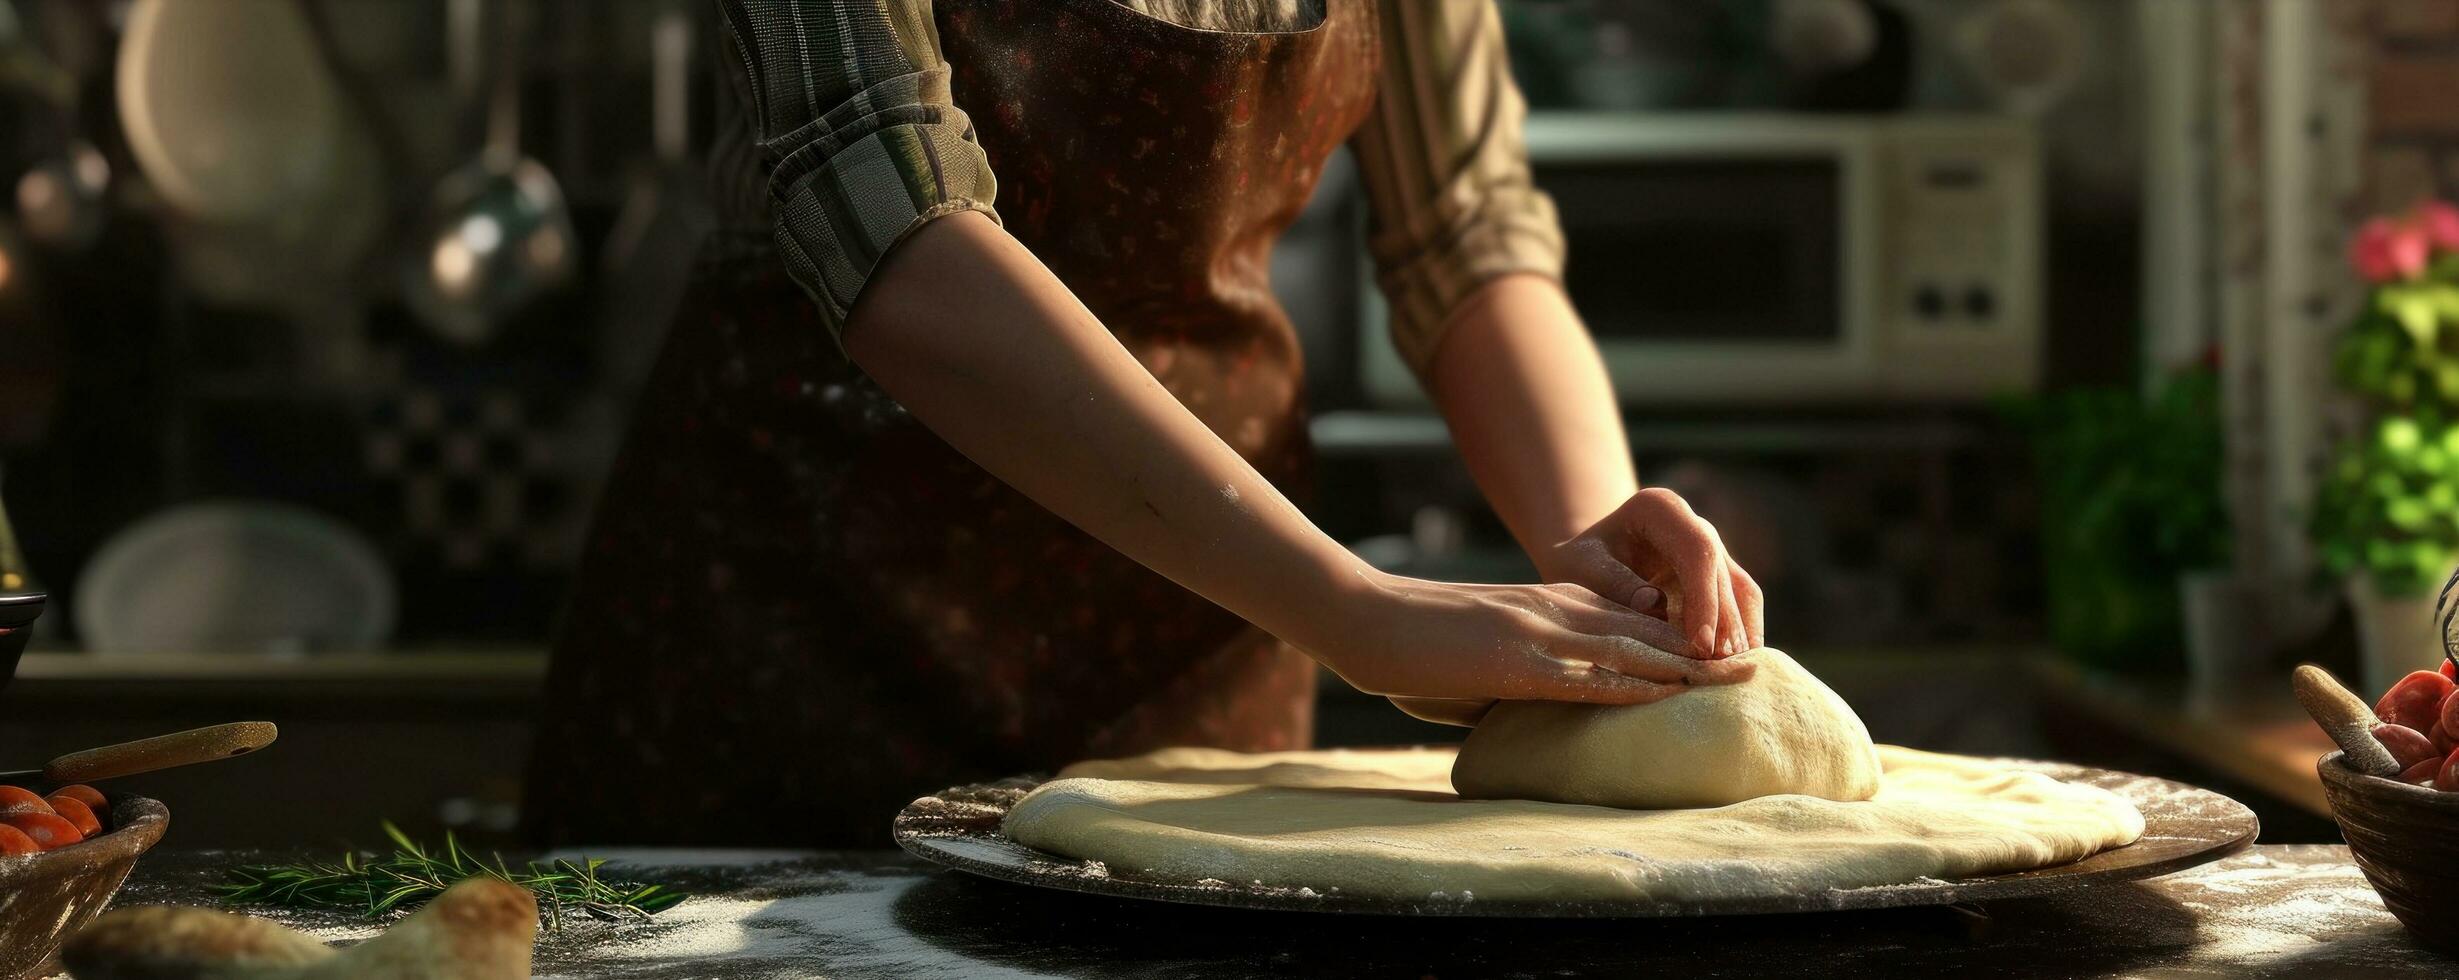 AI generated a chef preparing dough for pizza photo